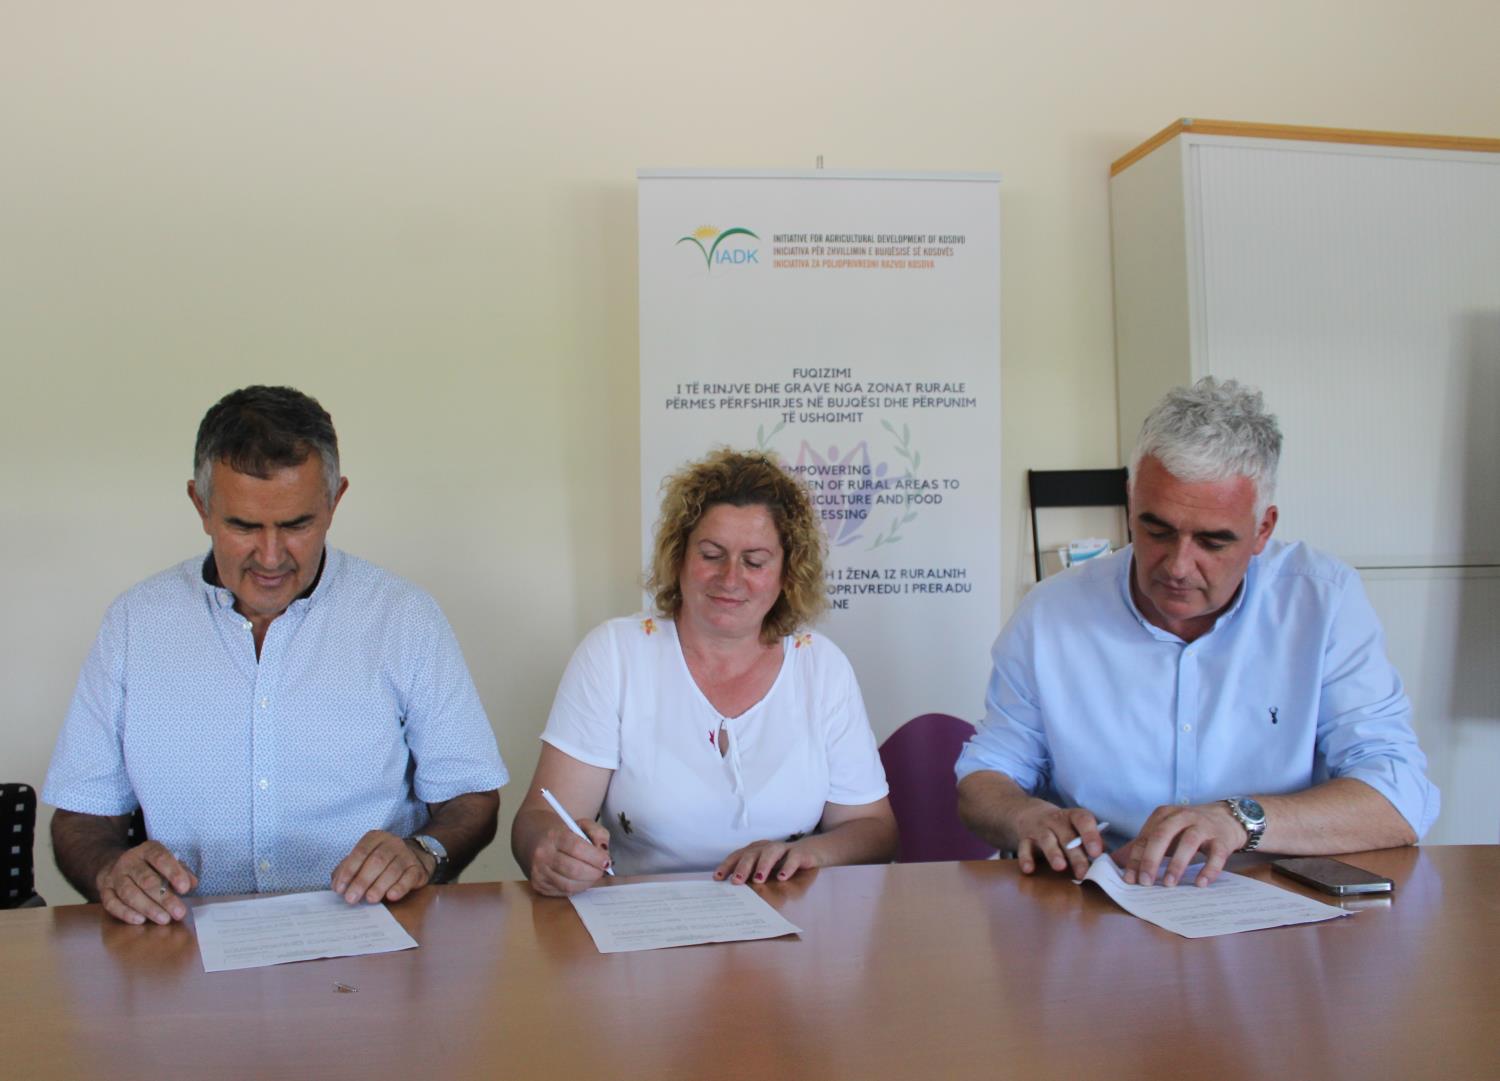 Ceremonia e nënshkrimit të kontratave dhe shpërndarja e mekanizmit bujqësor me përfituesit nga Komuna e Mitrovicës së Jugut dhe Vushtrrisë